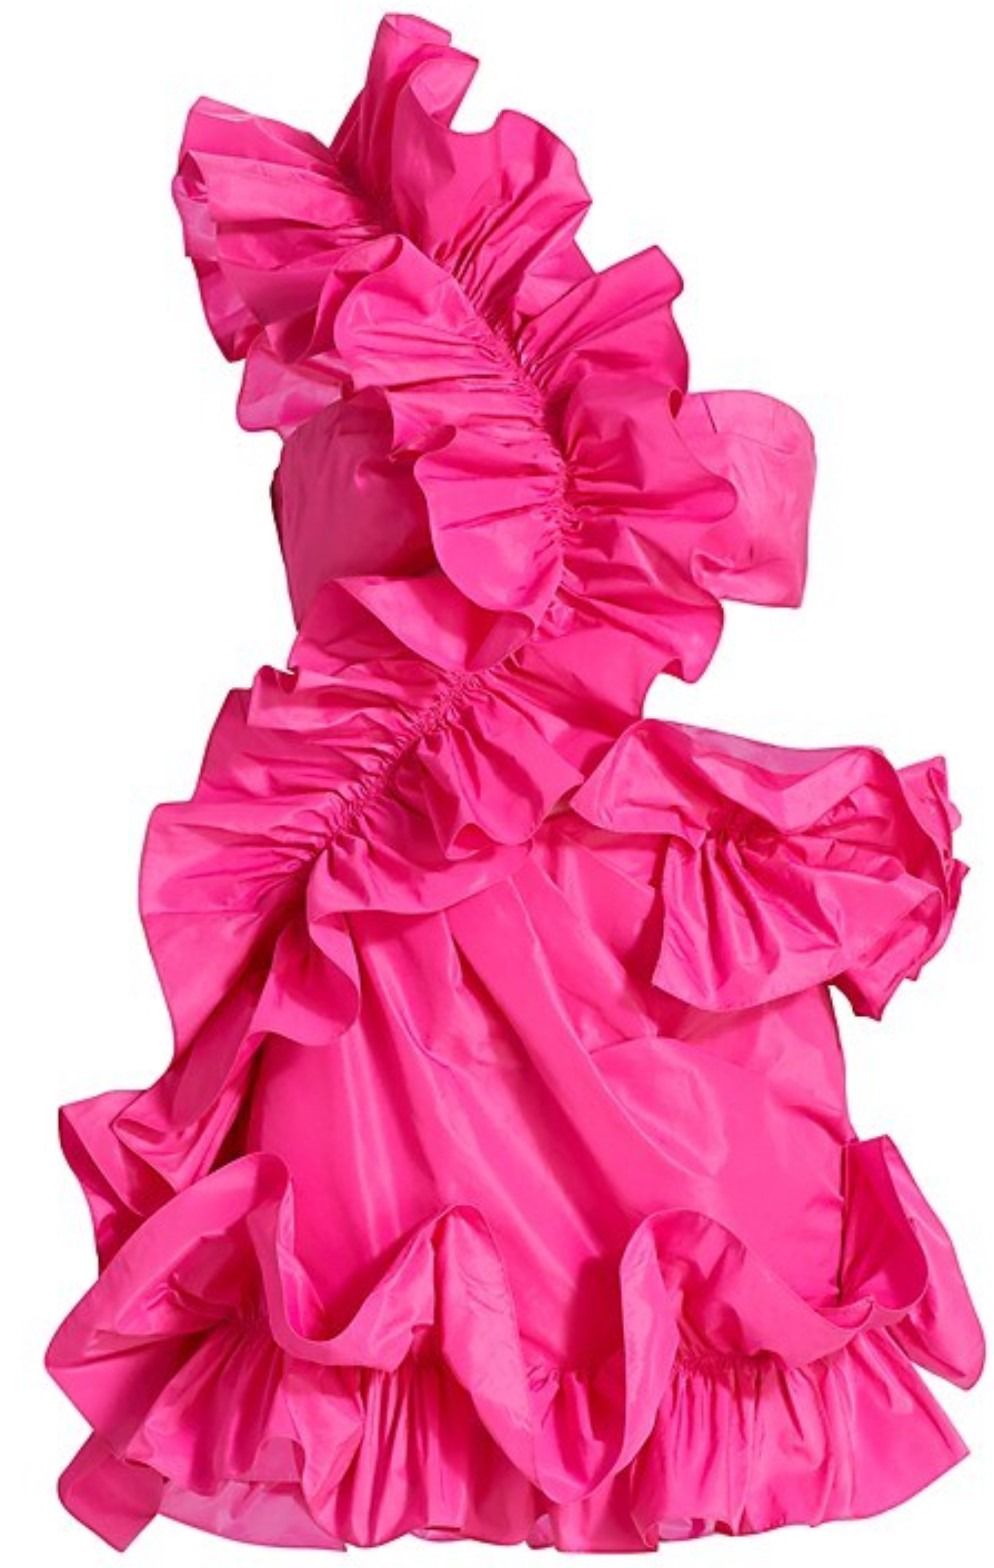 Emma Hernan - "Barbie" World Premiere | Emma Hernan style